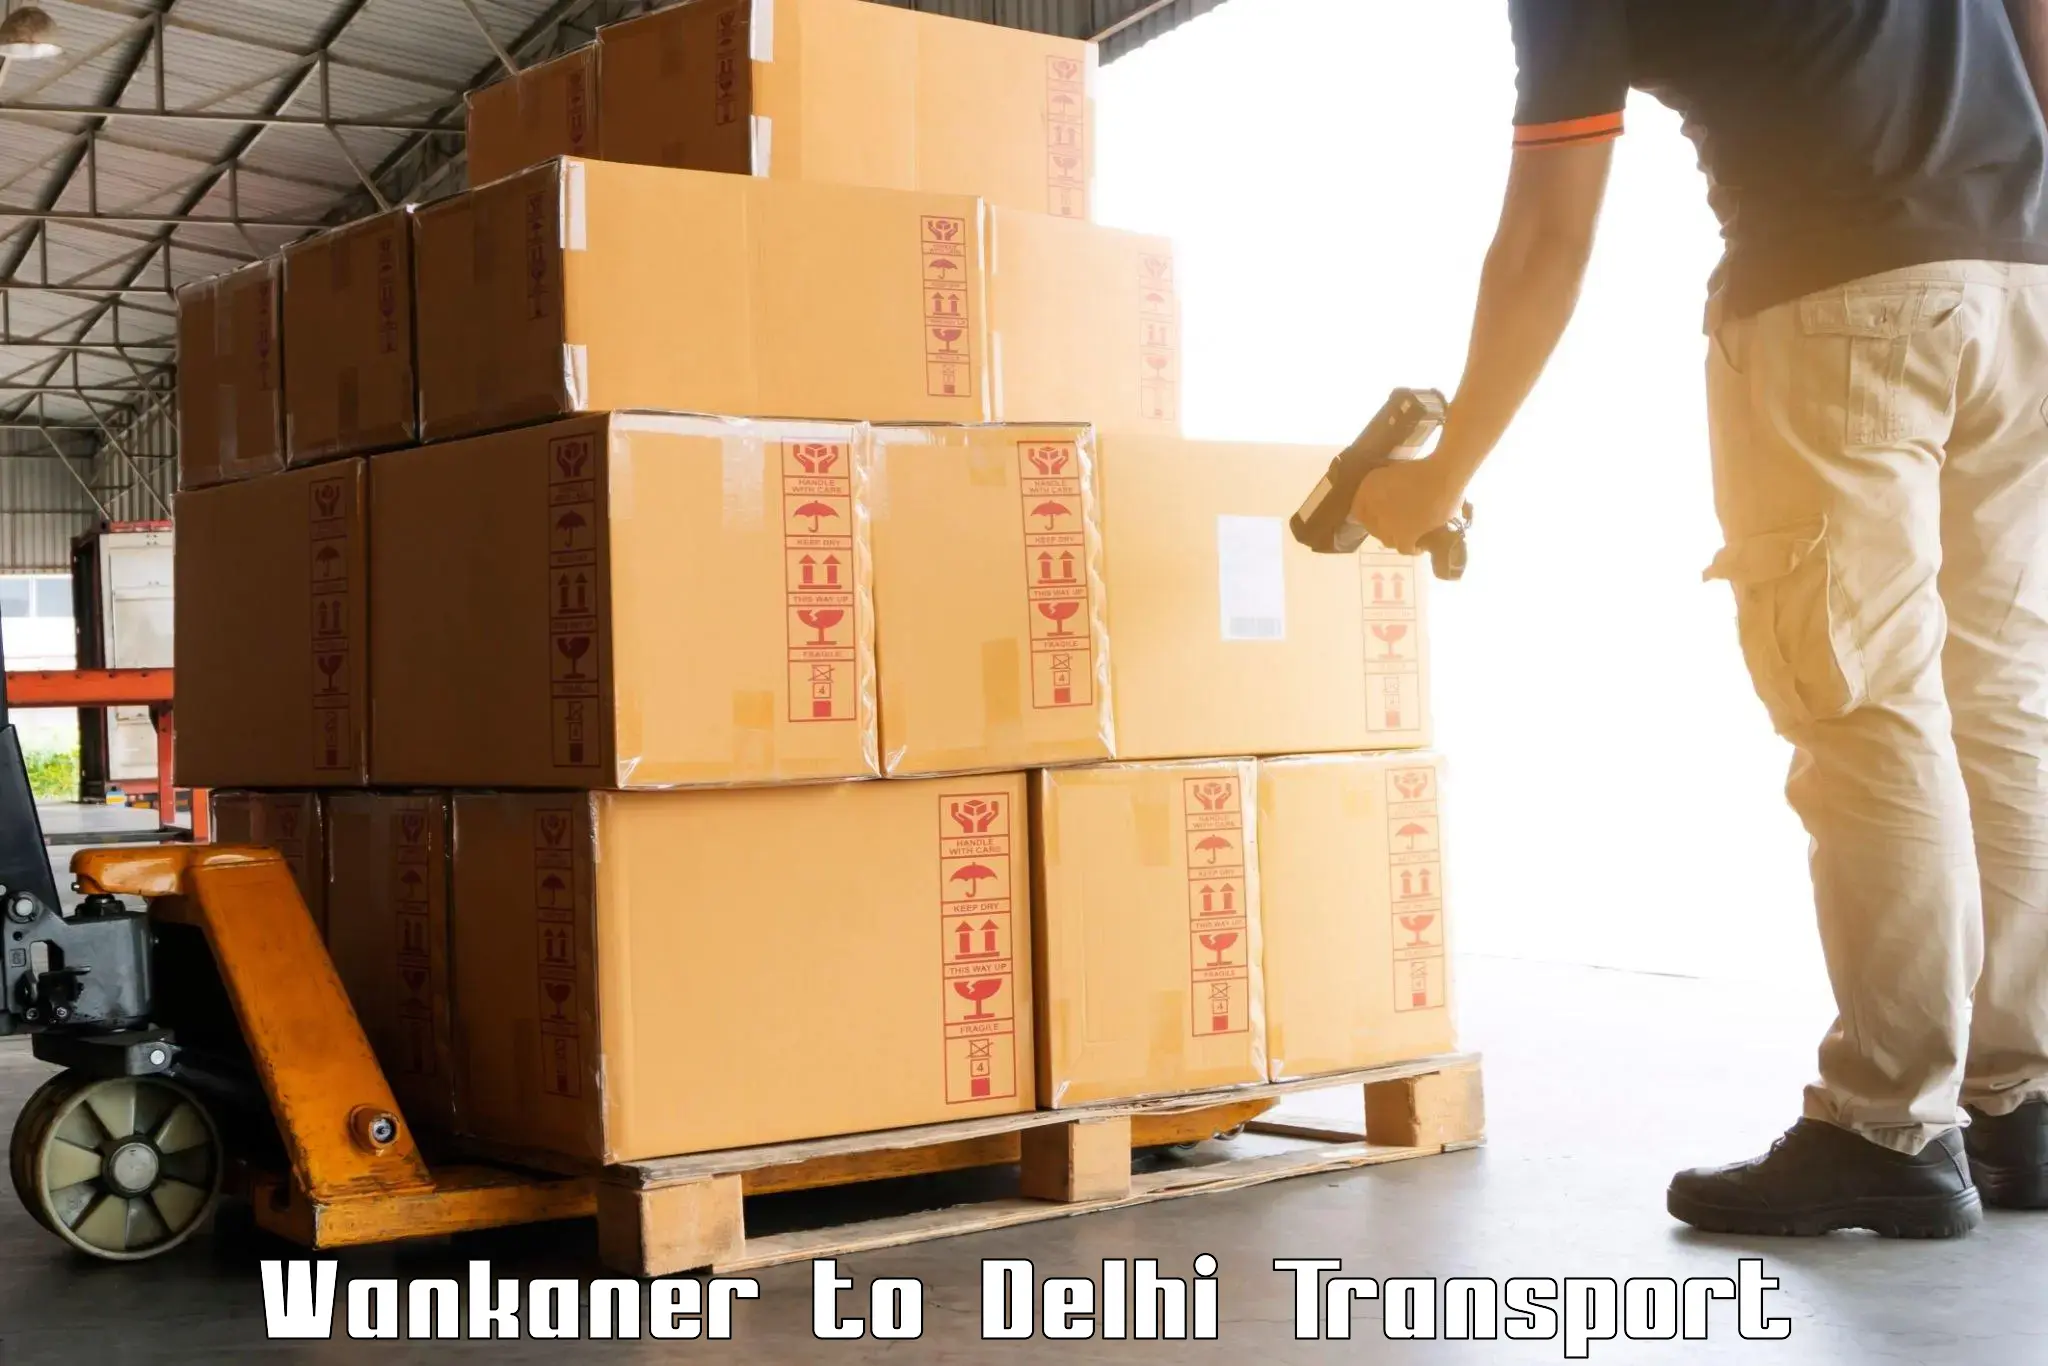 Material transport services Wankaner to Sarojini Nagar